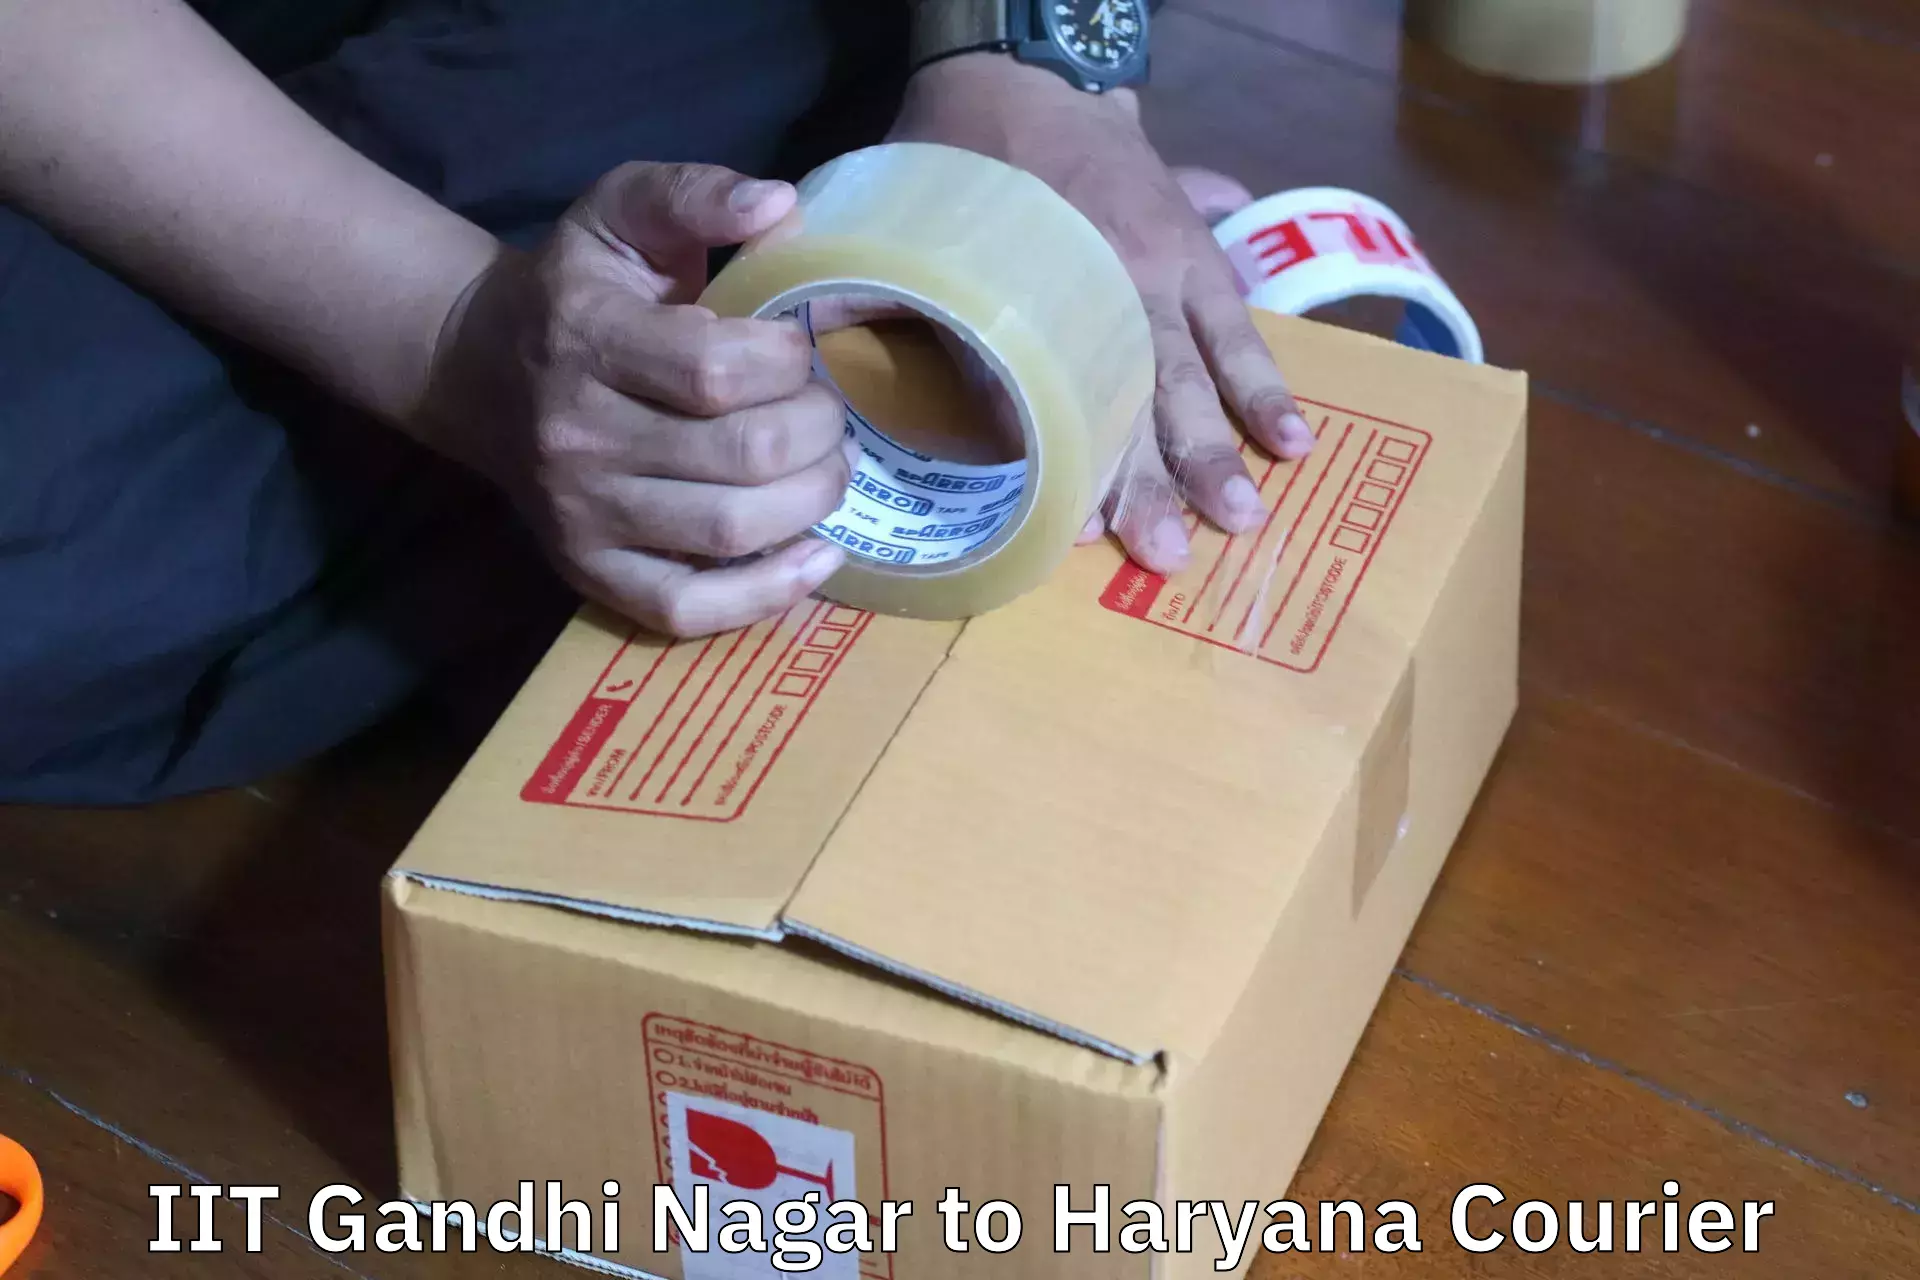 Personalized furniture moving IIT Gandhi Nagar to Haryana